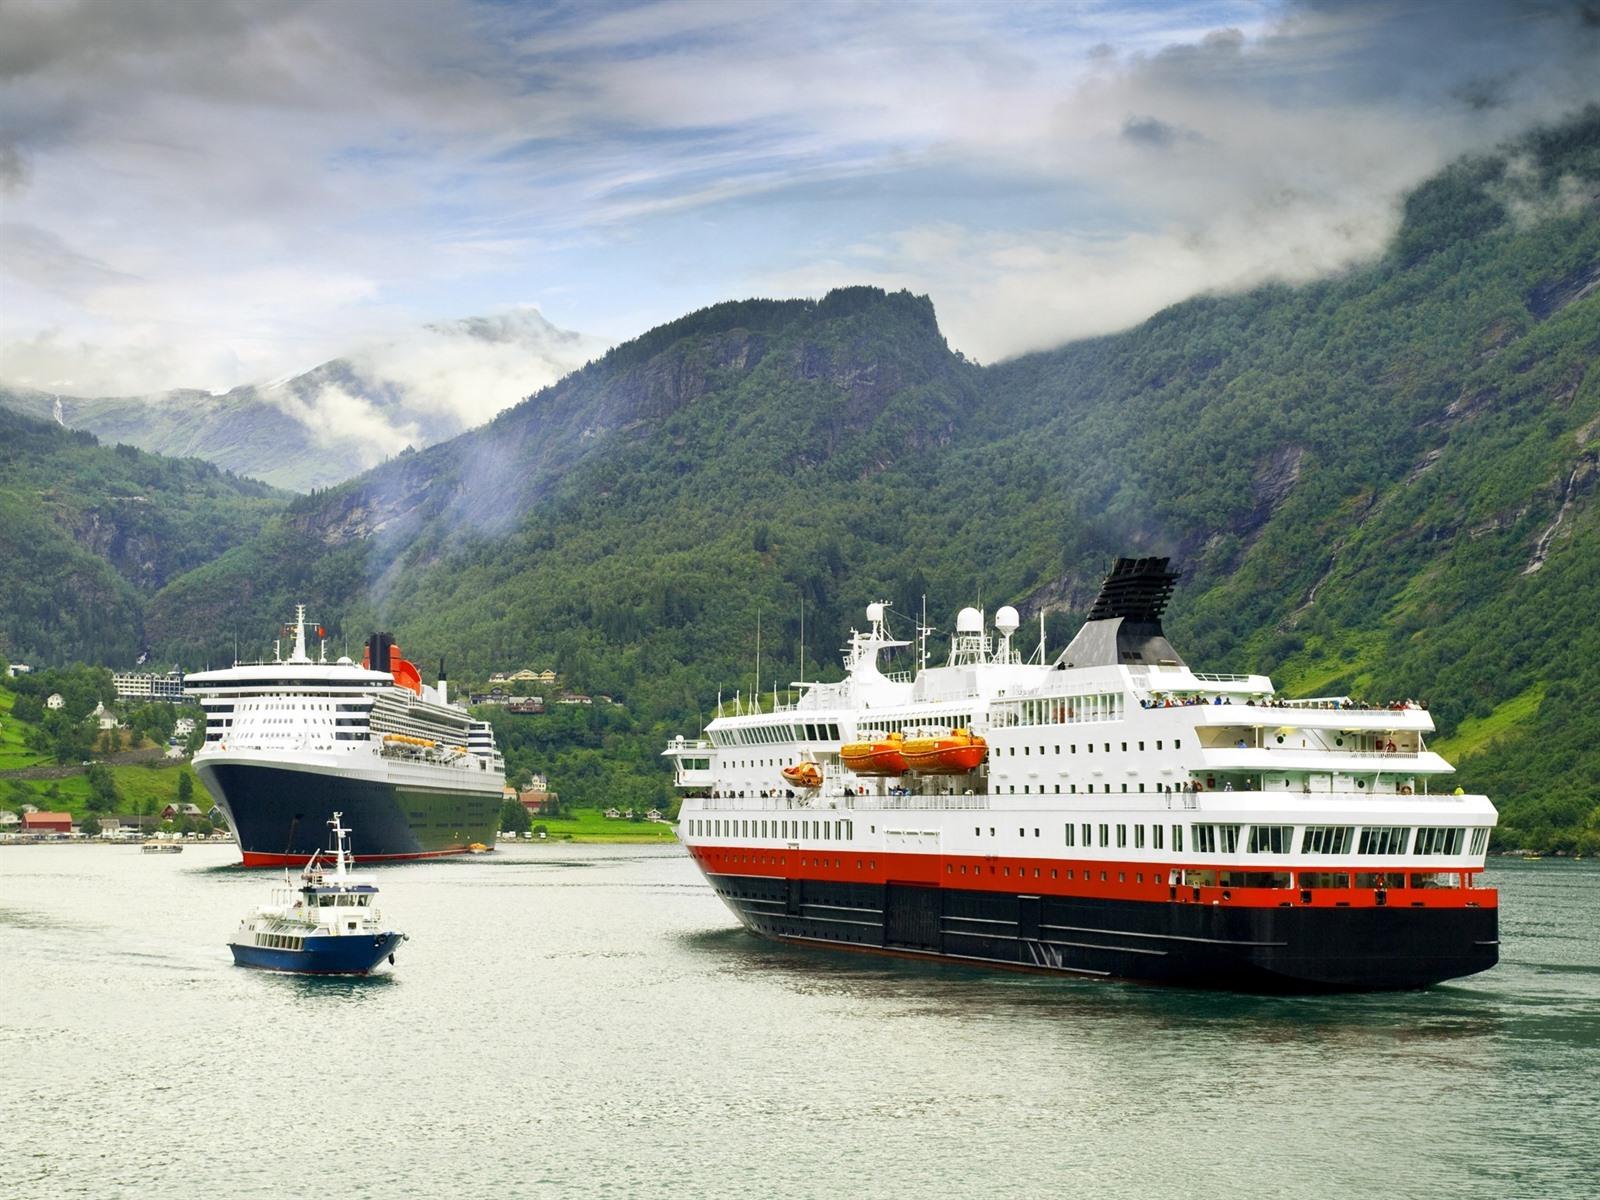 tui noorse fjorden cruise